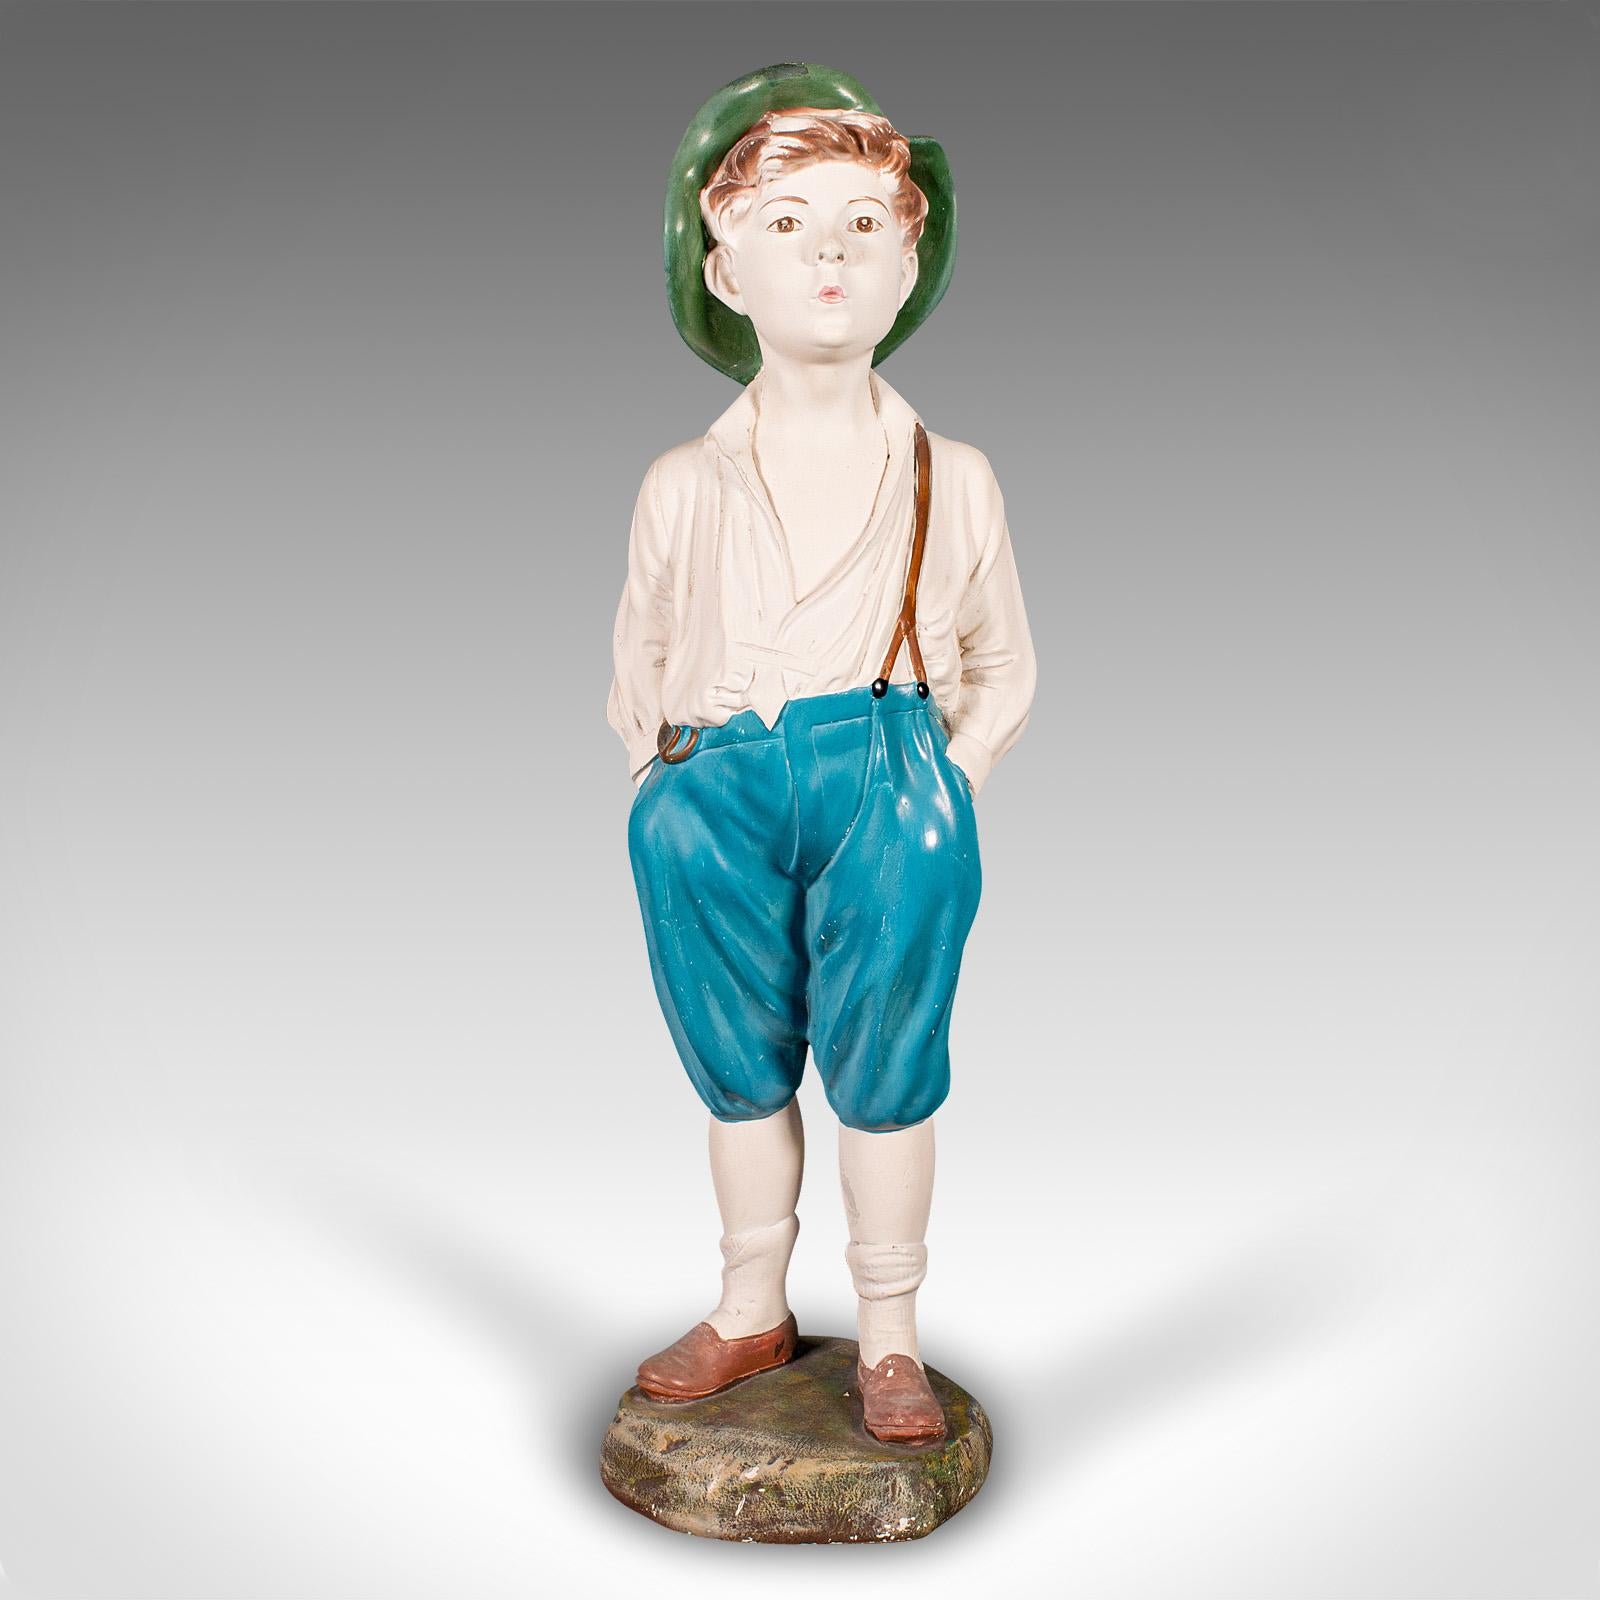 
Dies ist eine große, pfeifende Jungenfigur im Vintage-Stil. Eine englische, dekorative Statue aus Gips, aus der Zeit des Art déco, um 1930.

Schelmischer und liebenswerter Junge mit großer Ausstrahlung
Mit wünschenswerter Alterspatina und in gutem